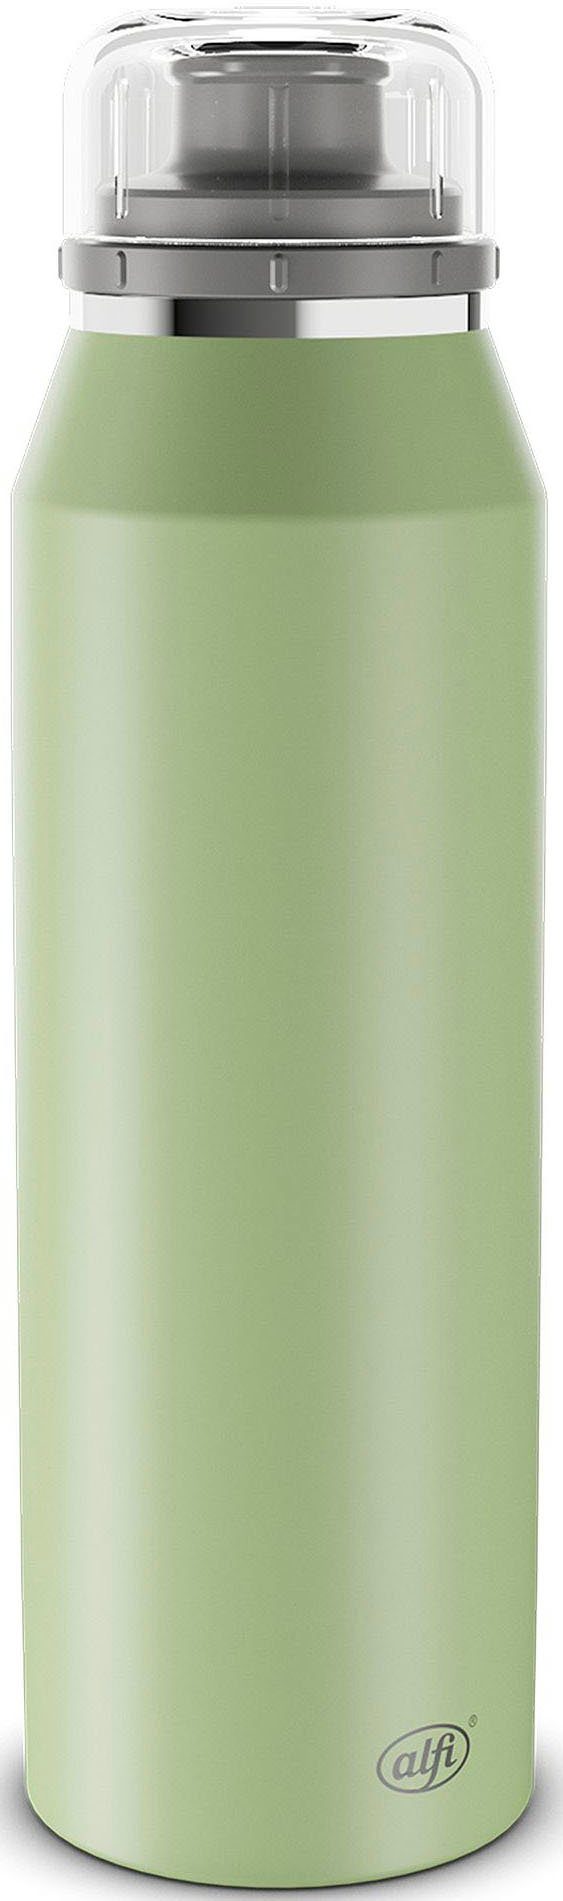 Alfi Isolierflasche ENDLESS ISO BOTTLE, Edelstahl, 500 ml celadon green mat